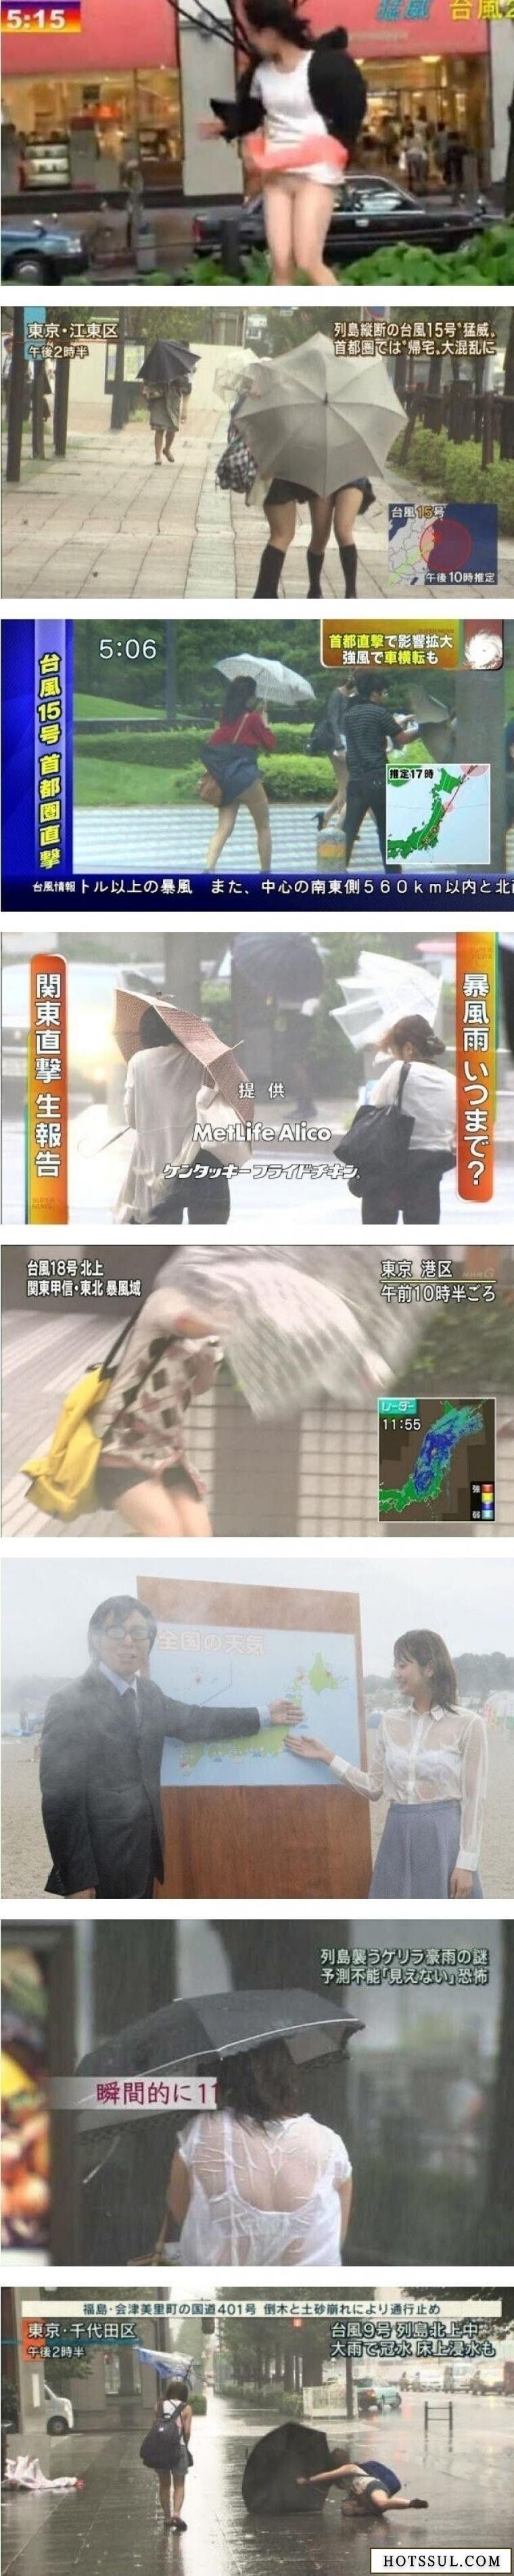 태풍 시즌이면 일본 뉴스 시청률이 올라가는 이유